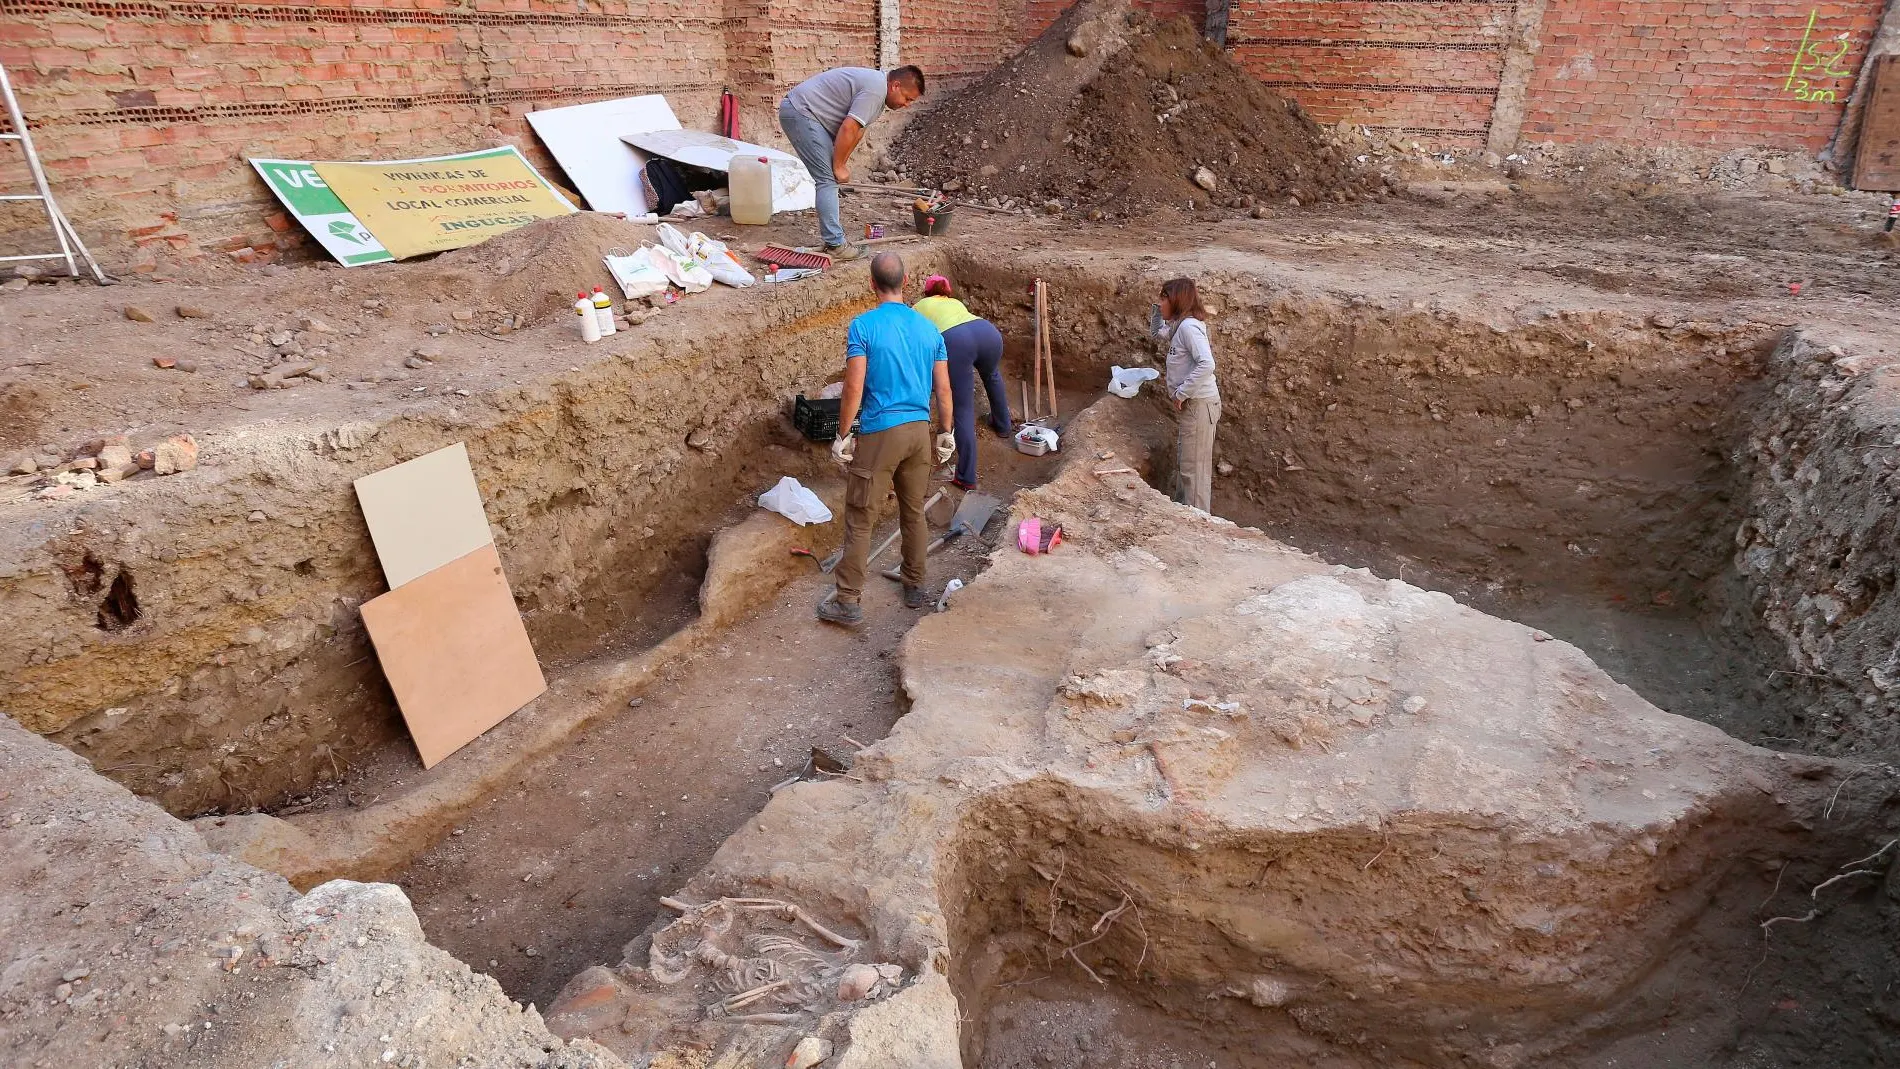 Aparecen restos de una vivienda romana del siglo III y restos humanos de dos personas en la excavación de un solar en el centro de la capital palentina